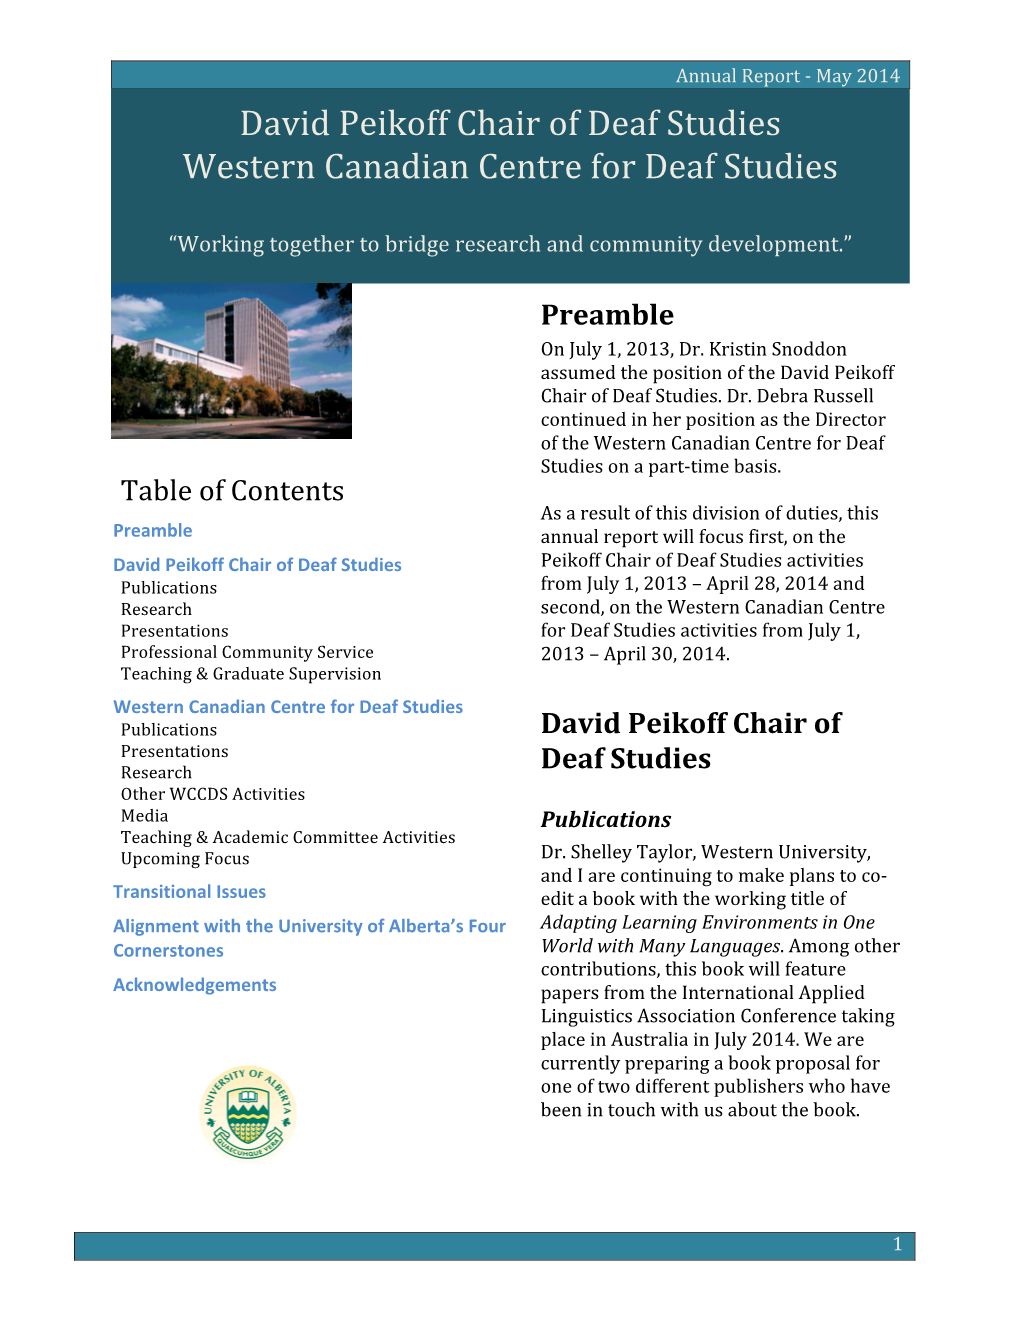 Western Canadian Centre for Deaf Studies